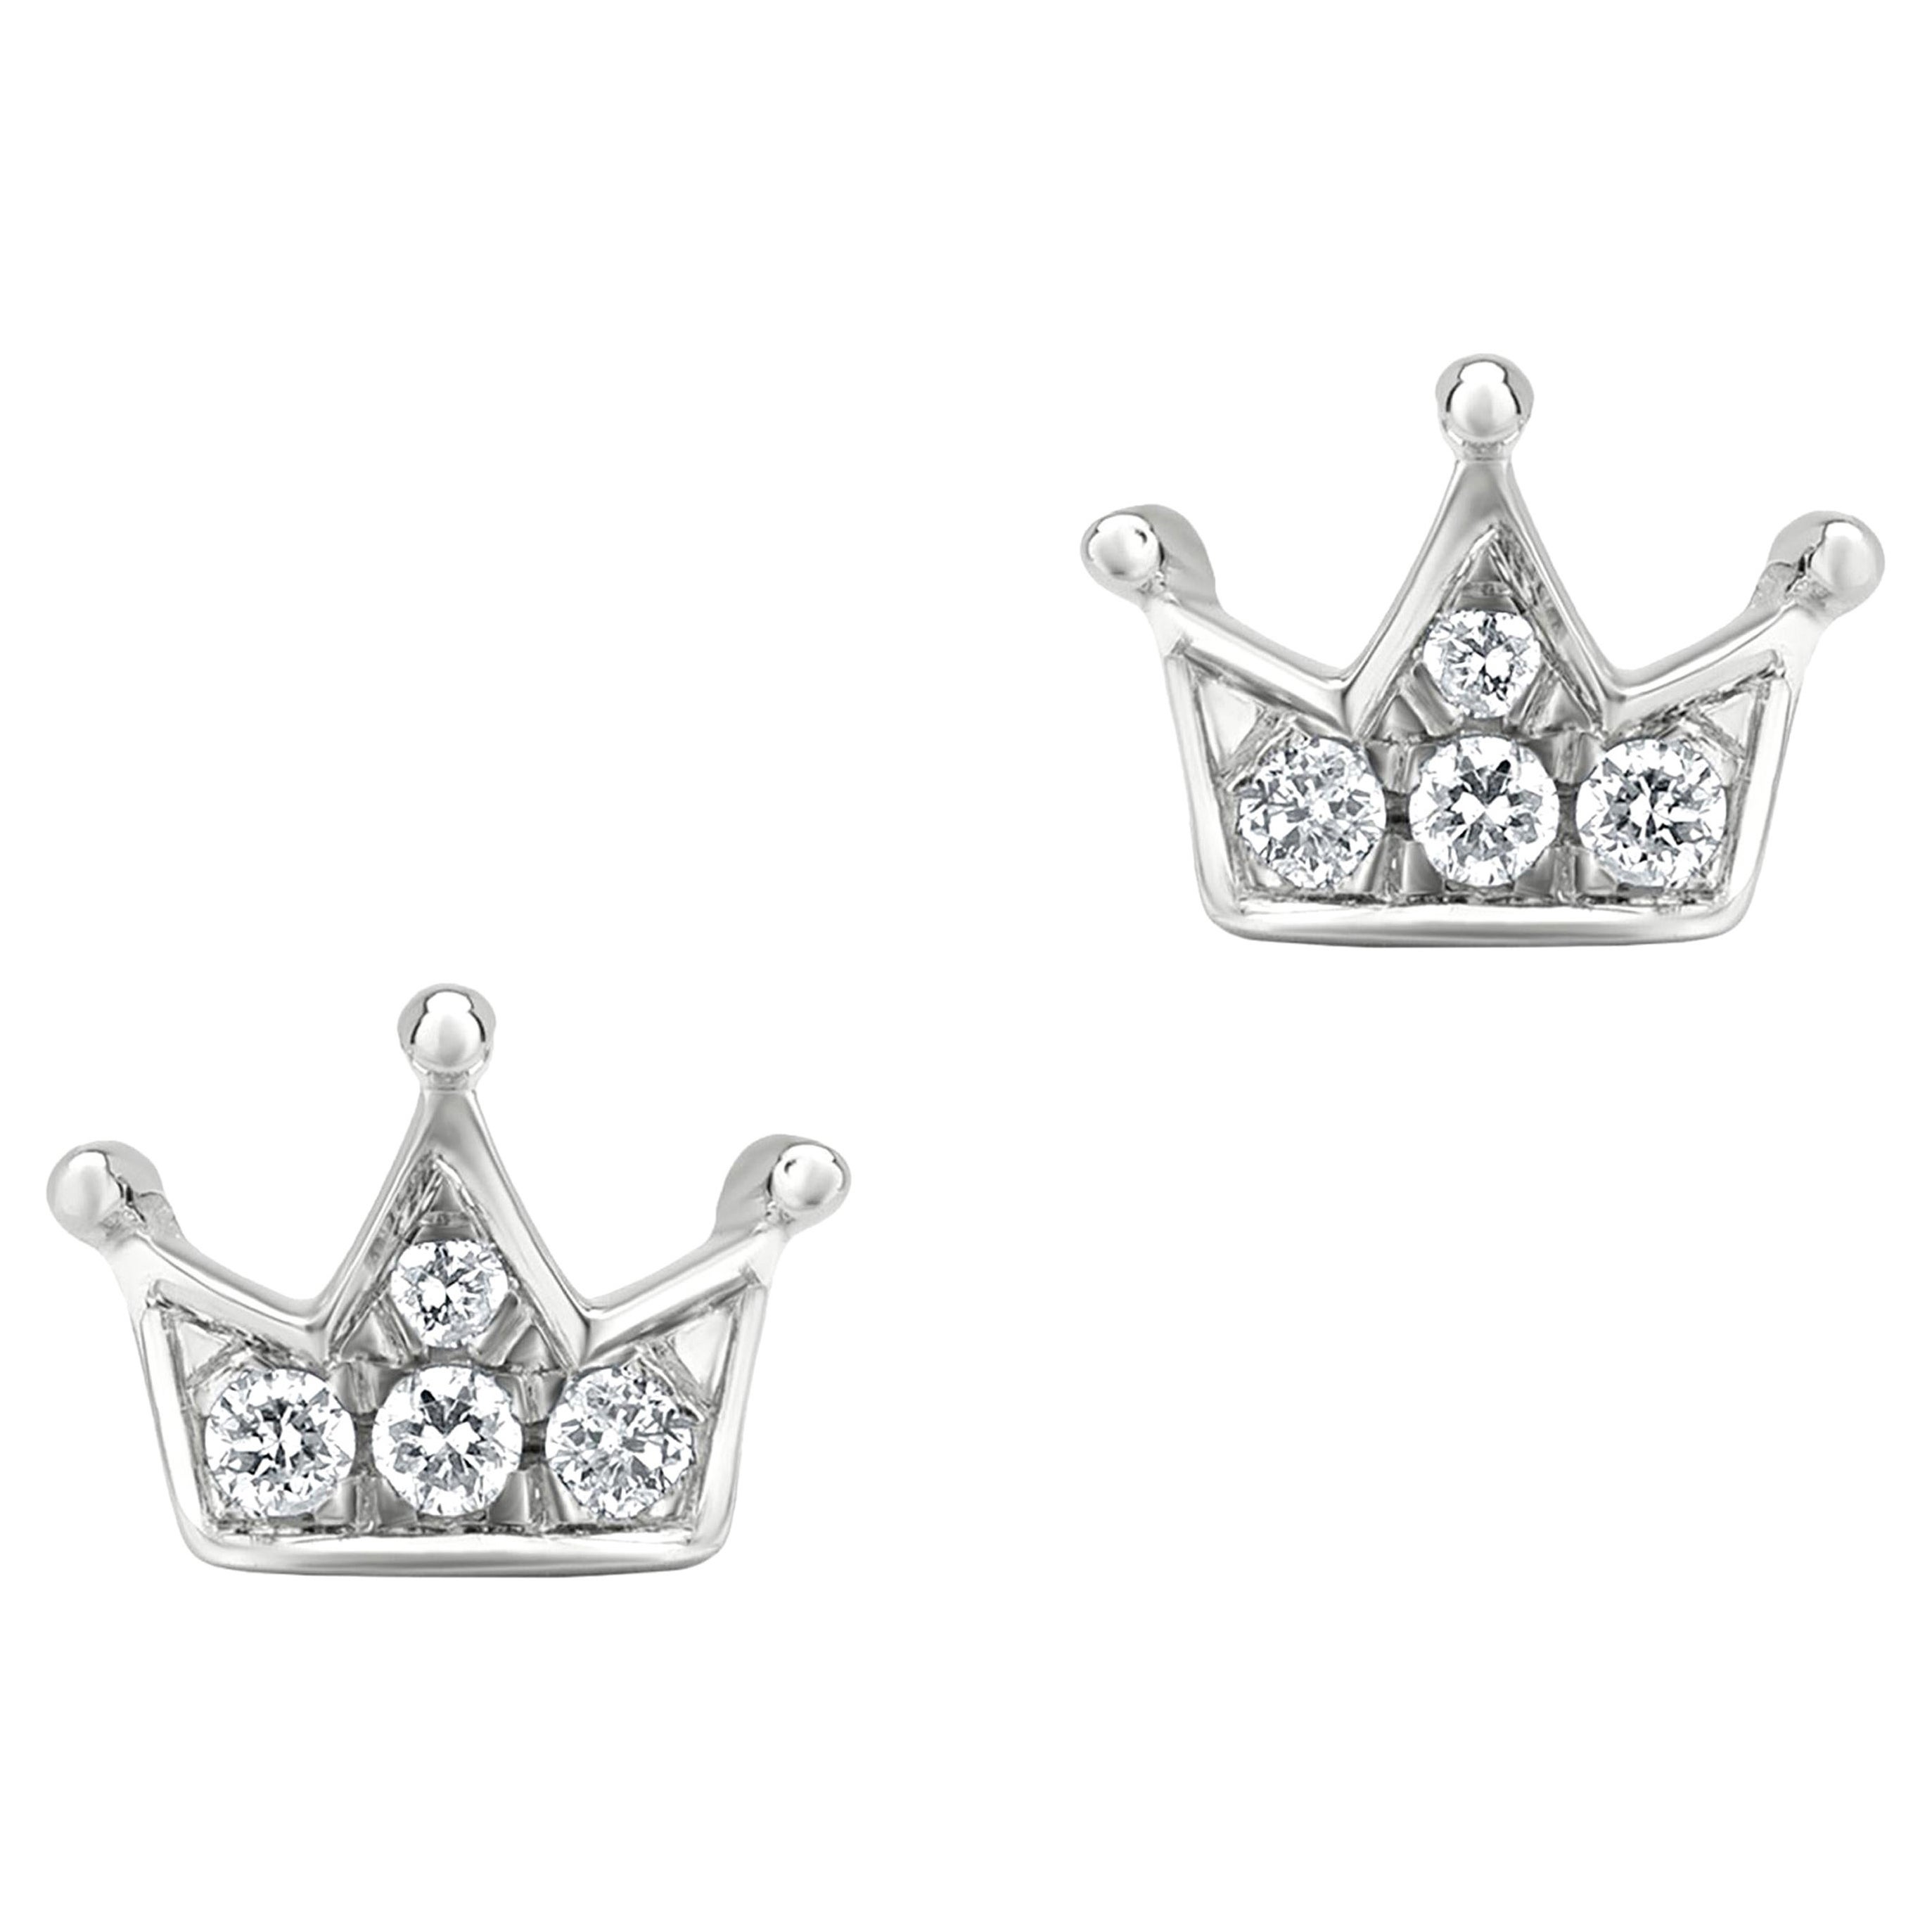 Luxle Crown Diamond Stud Earrings in 18k White Gold